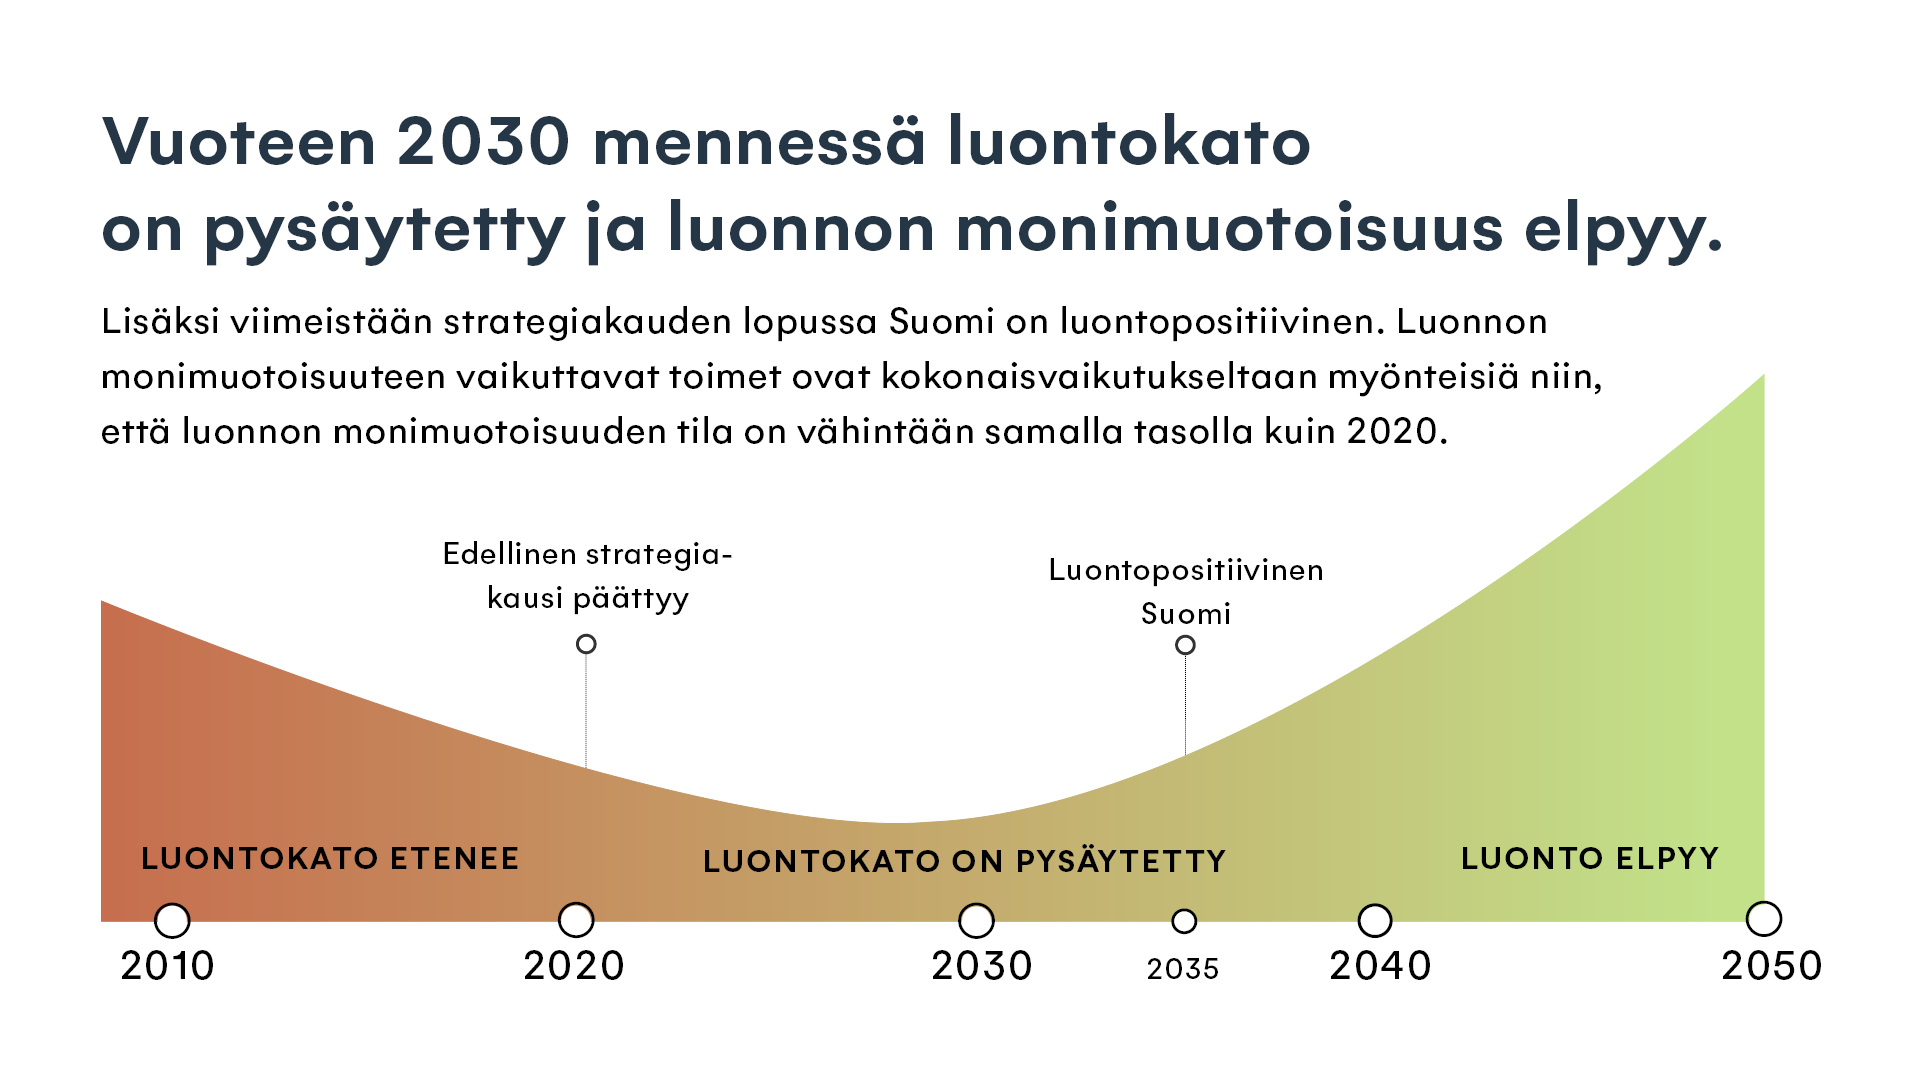 Kansallinen luonnon monimuotoisuusstrategia lausunnoille – luontokato  pysäytettävä vuoteen 2030 mennessä - Ympäristöministeriö